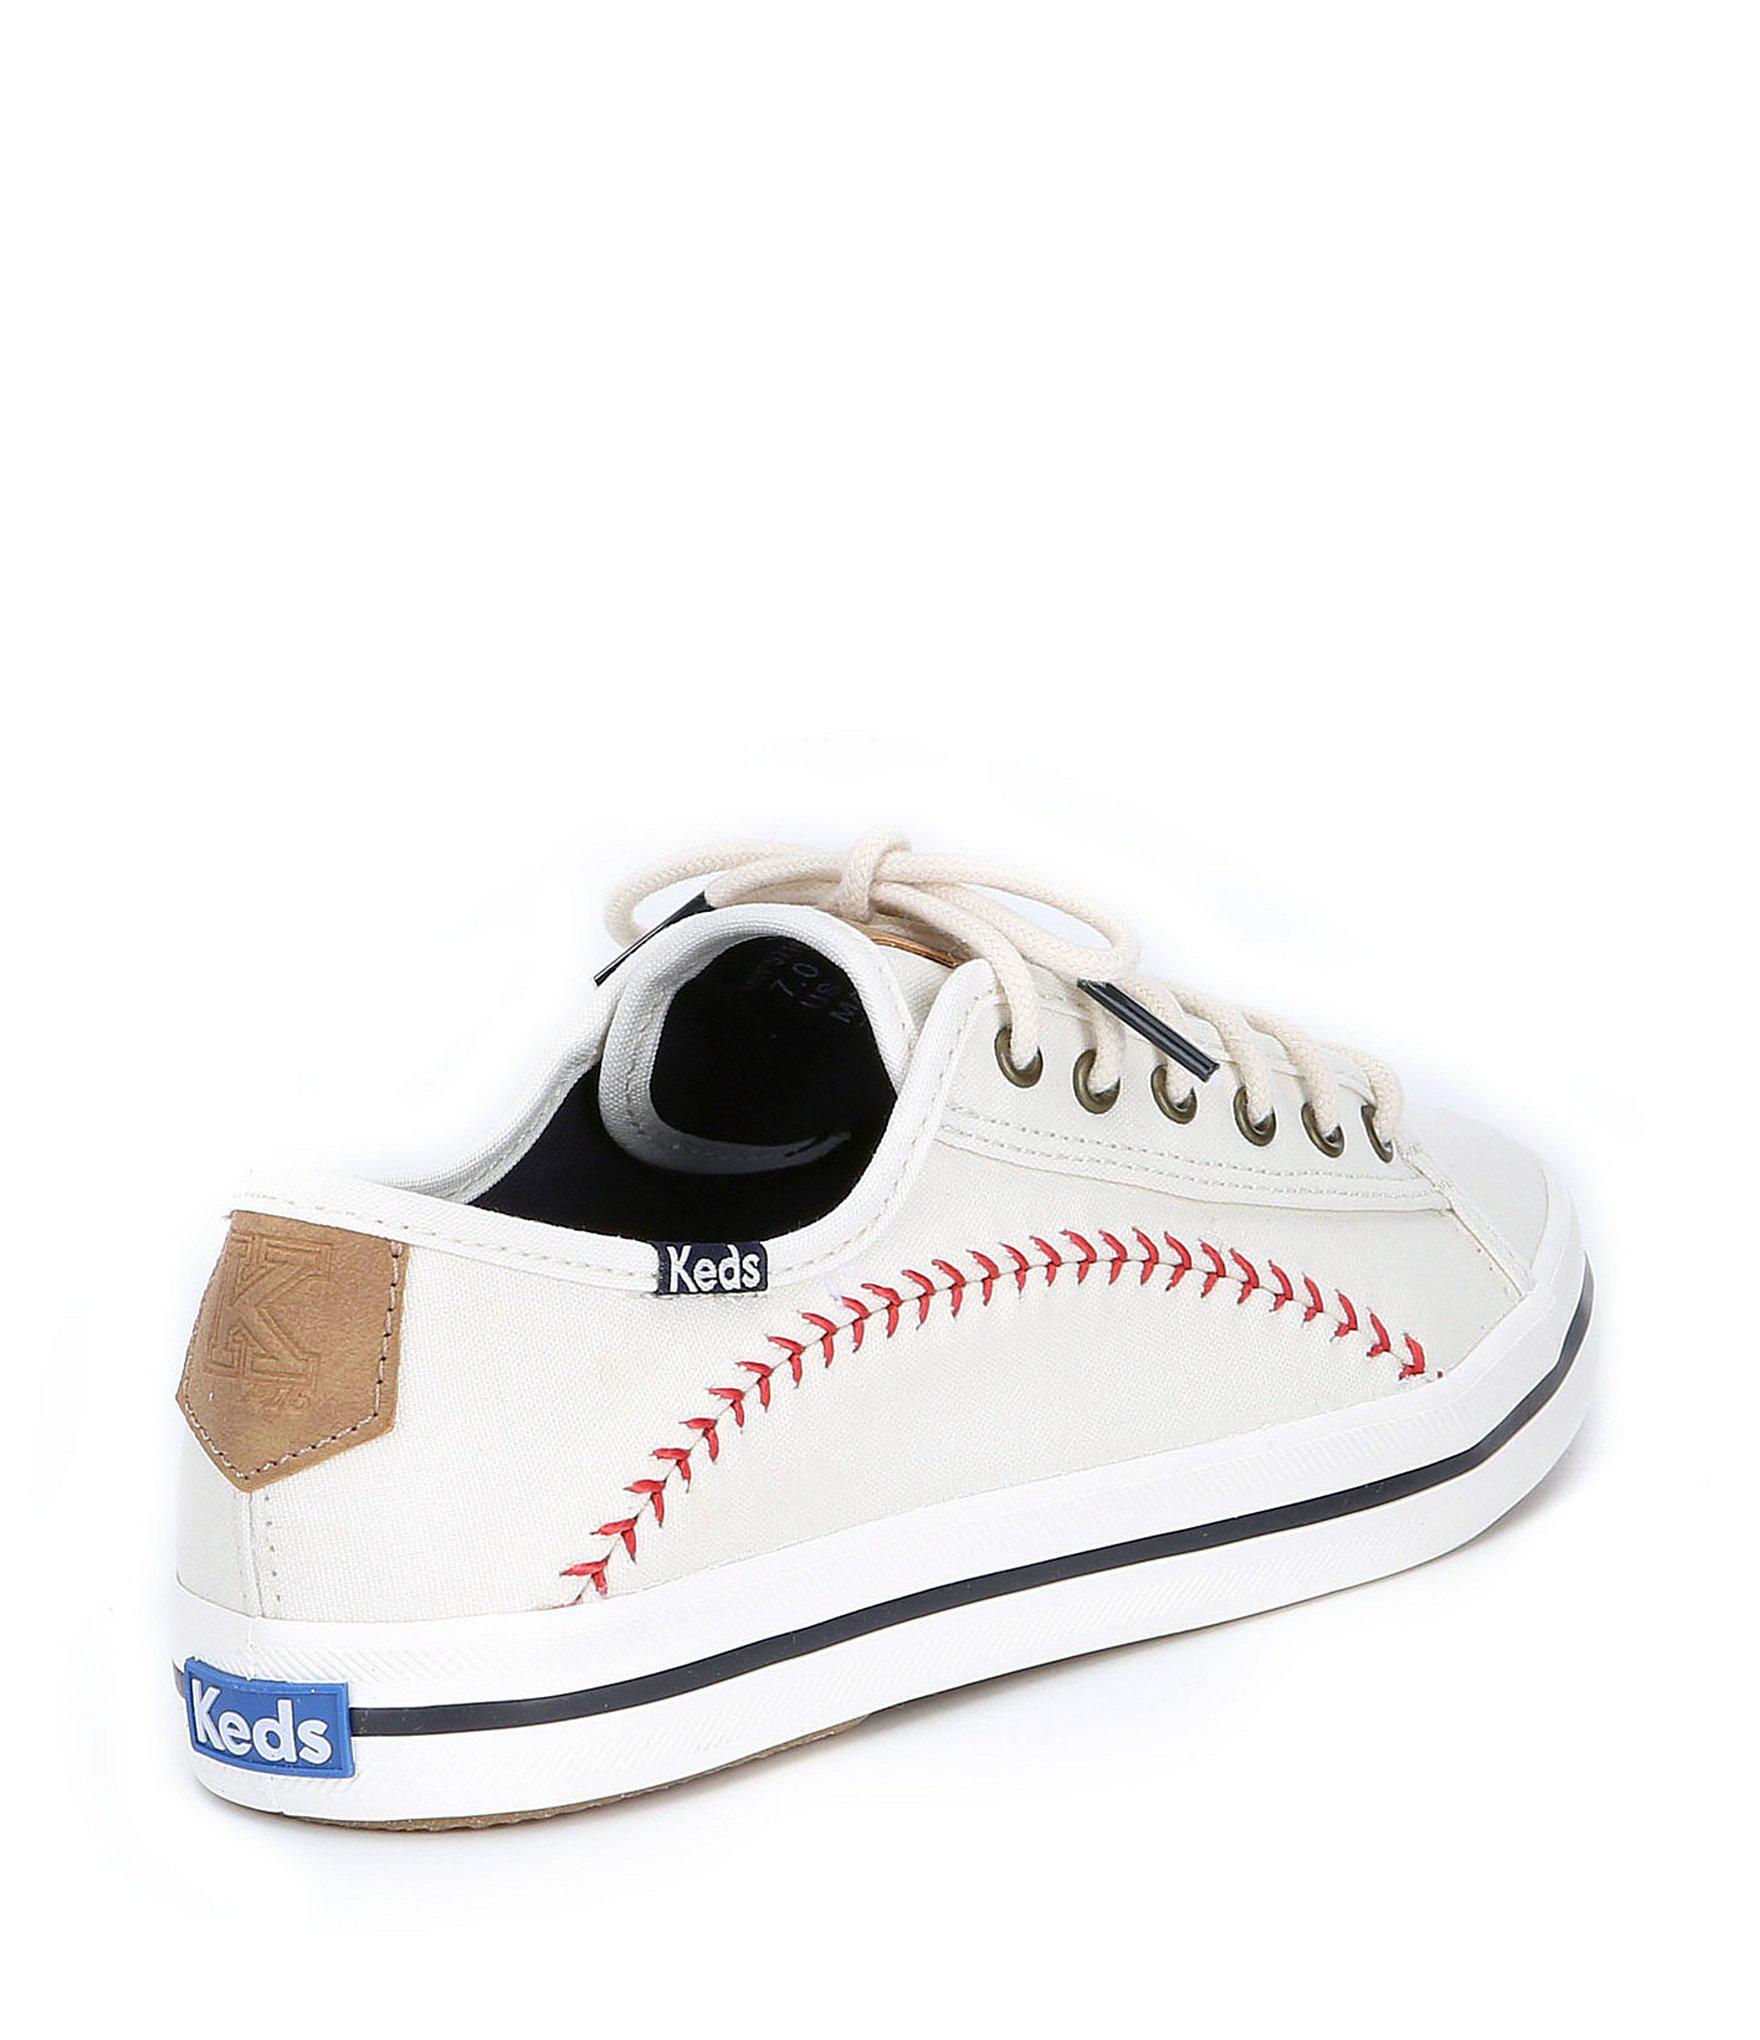 keds baseball stitch sneakers